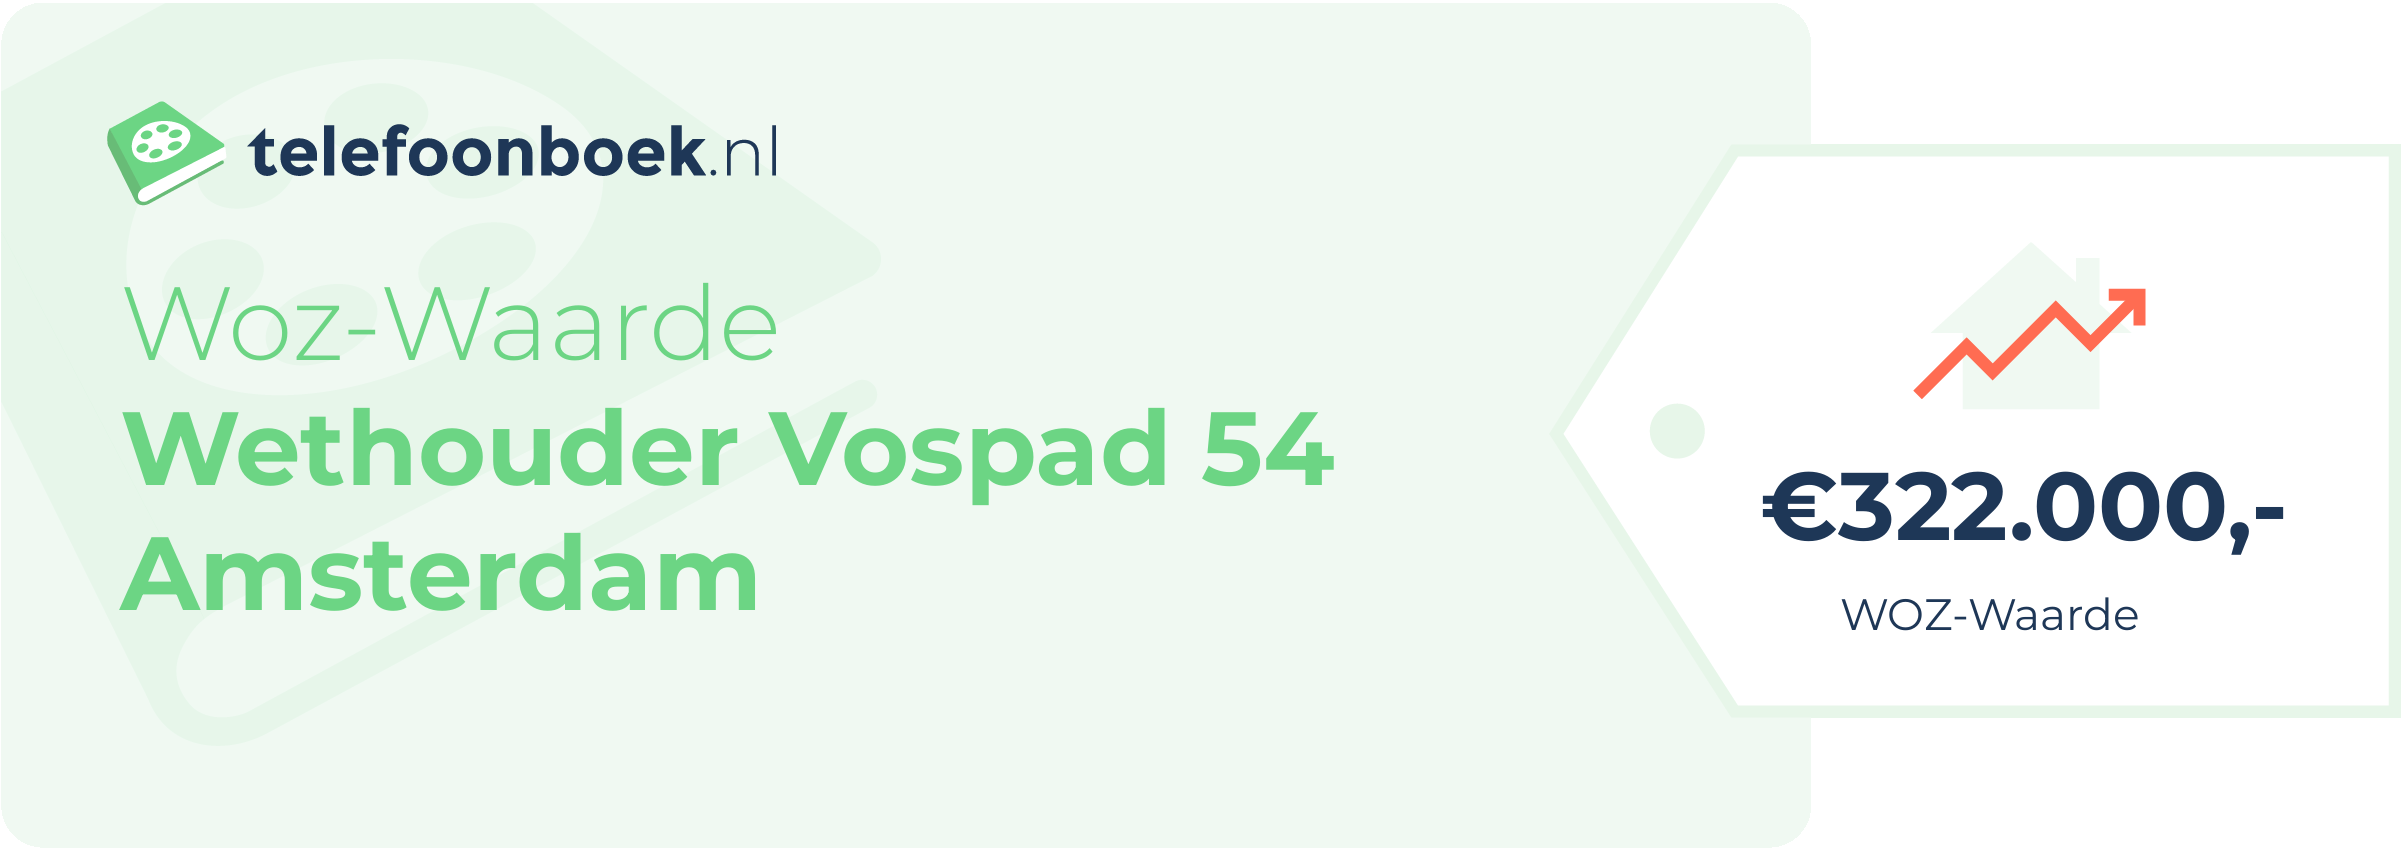 WOZ-waarde Wethouder Vospad 54 Amsterdam